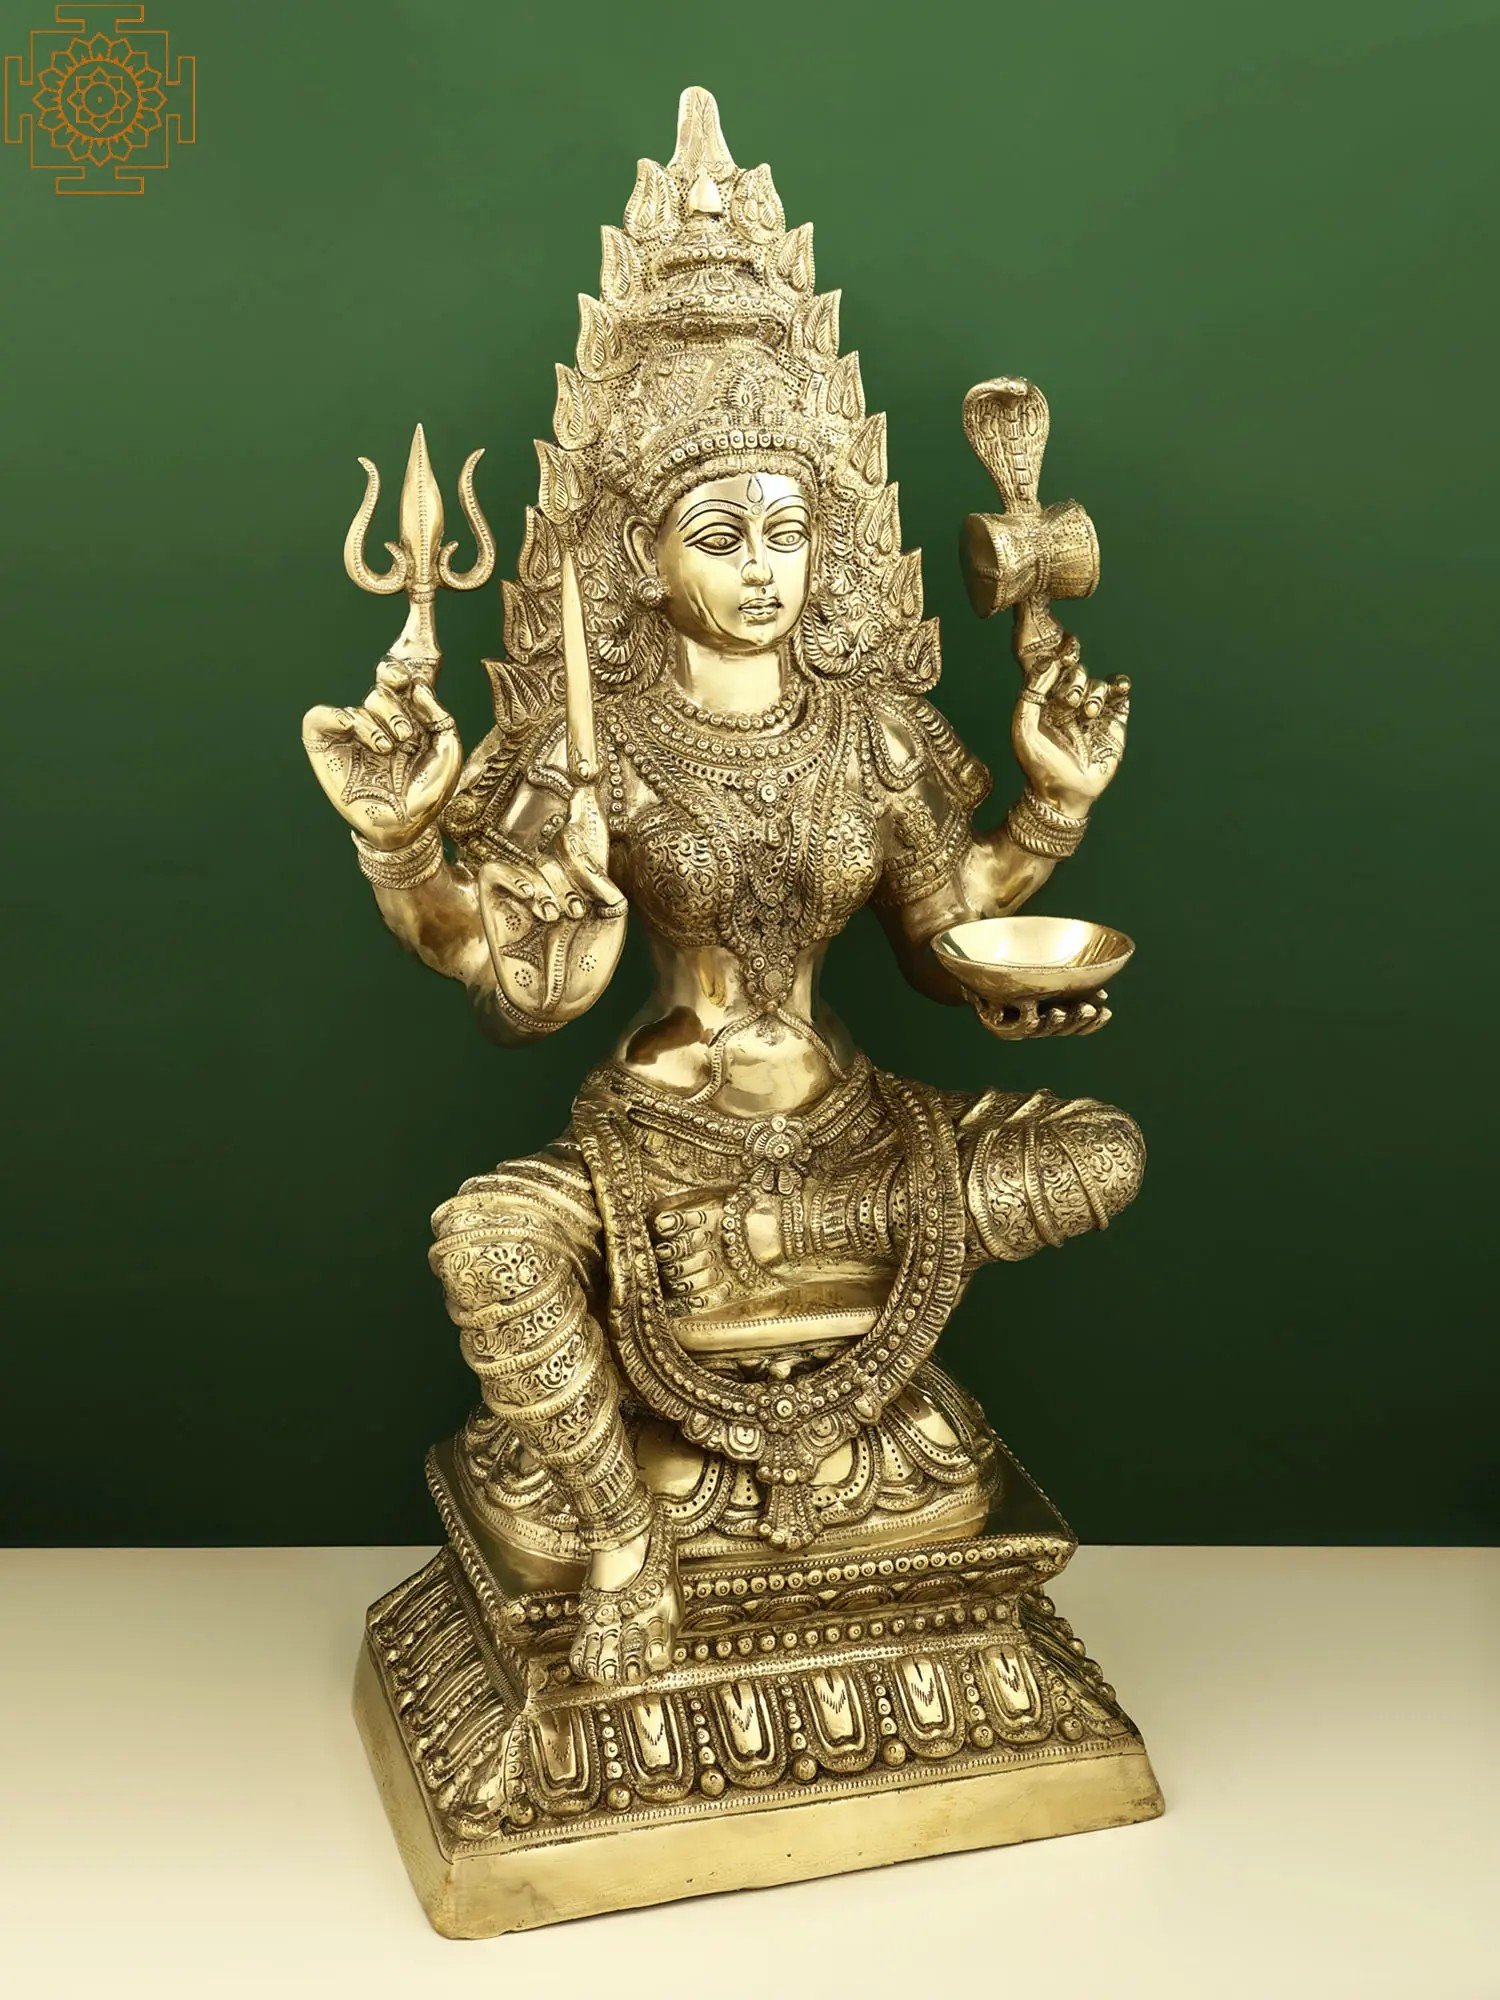 https://cdn.exoticindia.com/images/products/original/sculptures-2019/zer167_a01.jpg